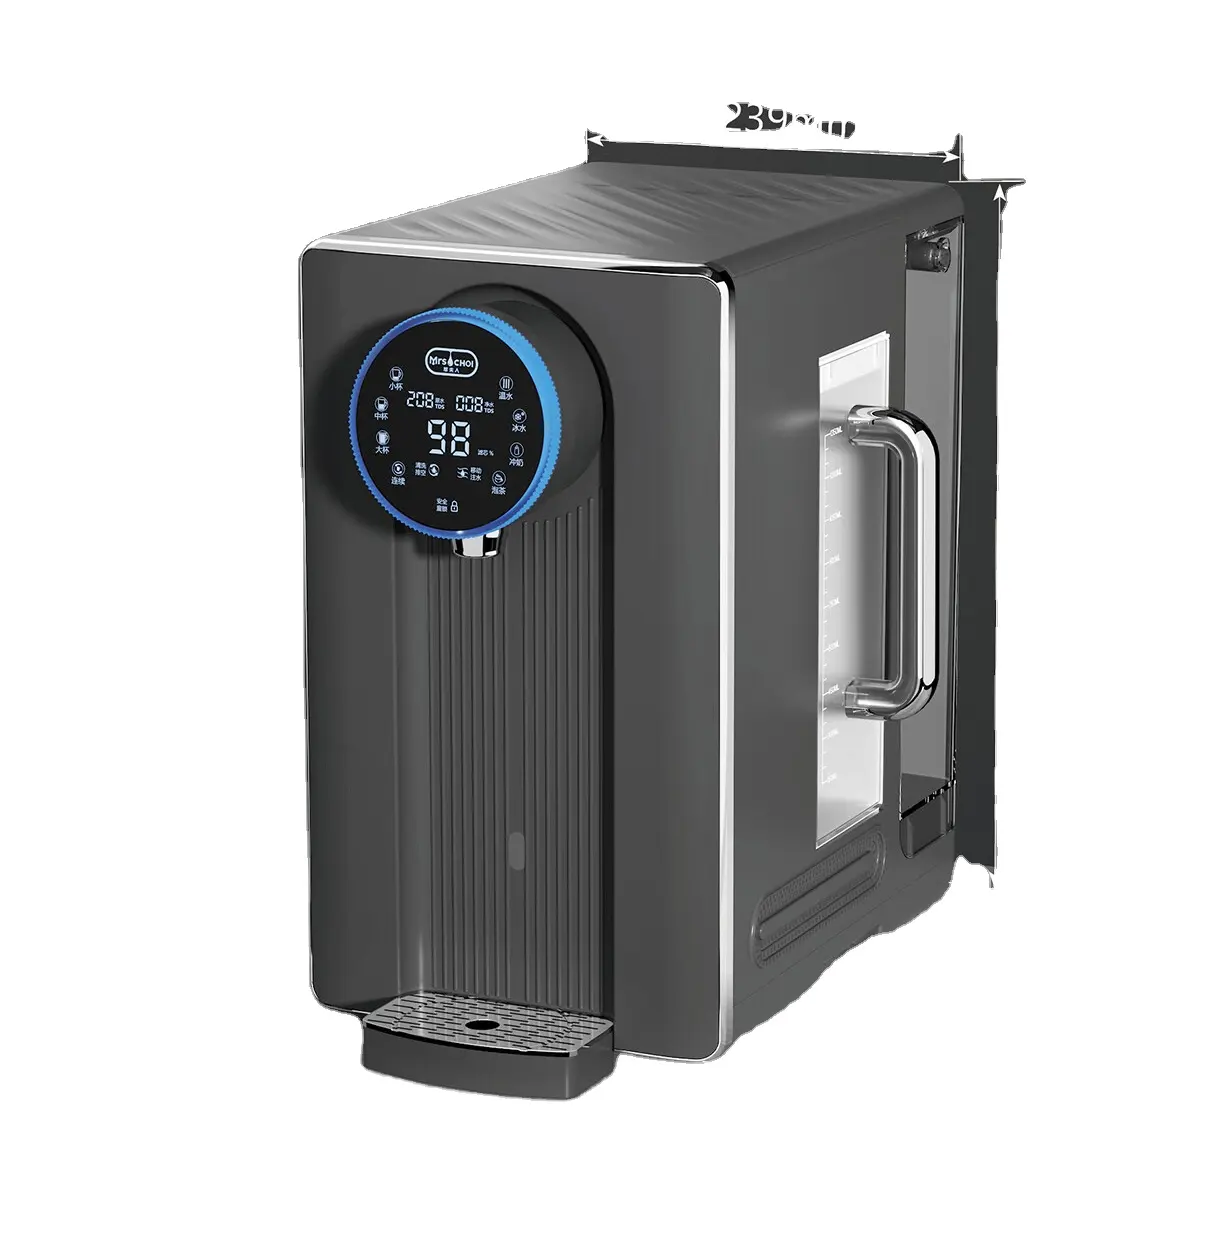 Sıcak ve soğuk su sebili sürdürülebilir ev aletleri su filtresi veya arıtma tezgah RO su saflaştırıcı dağıtıcı